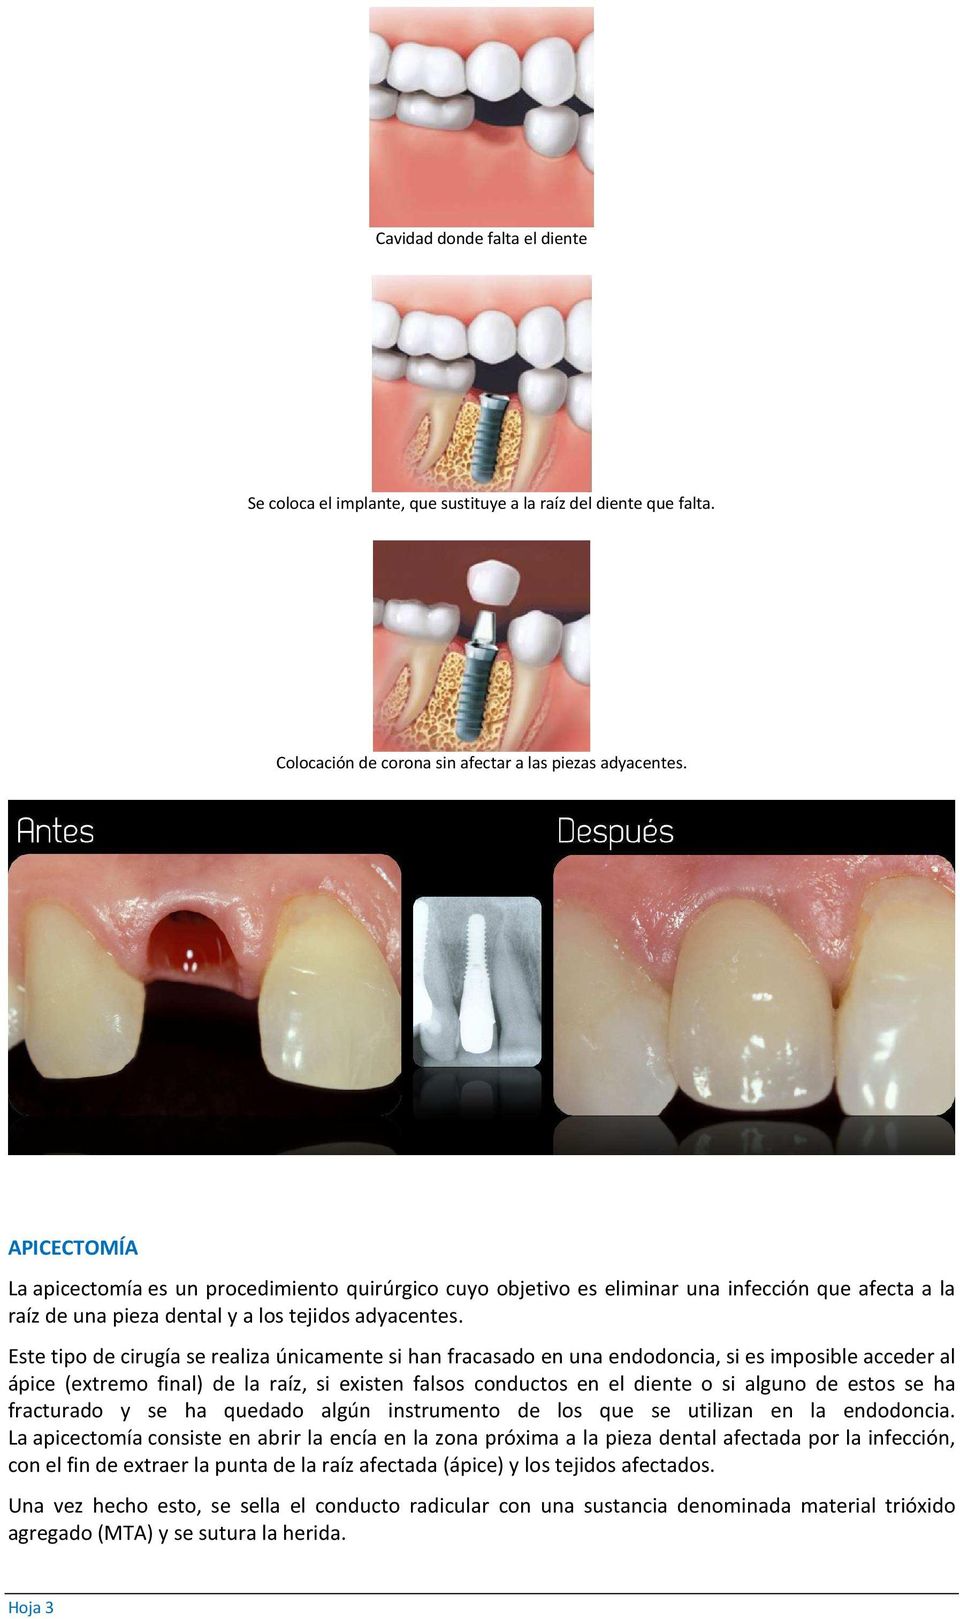 Este tipo de cirugía se realiza únicamente si han fracasado en una endodoncia, si es imposible acceder al ápice (extremo final) de la raíz, si existen falsos conductos en el diente o si alguno de